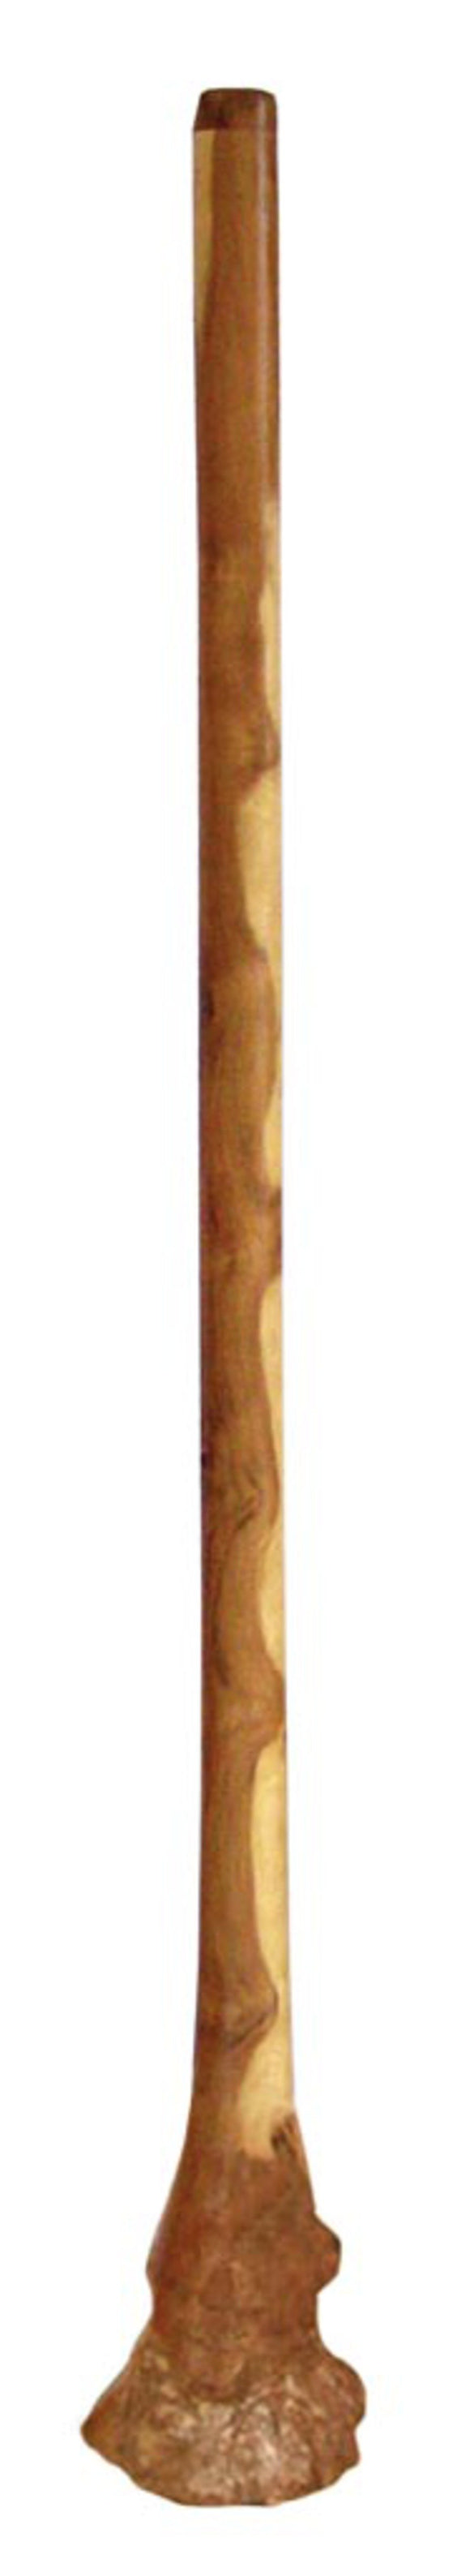 Didgeridoo Eucalyptus Root 60 inch